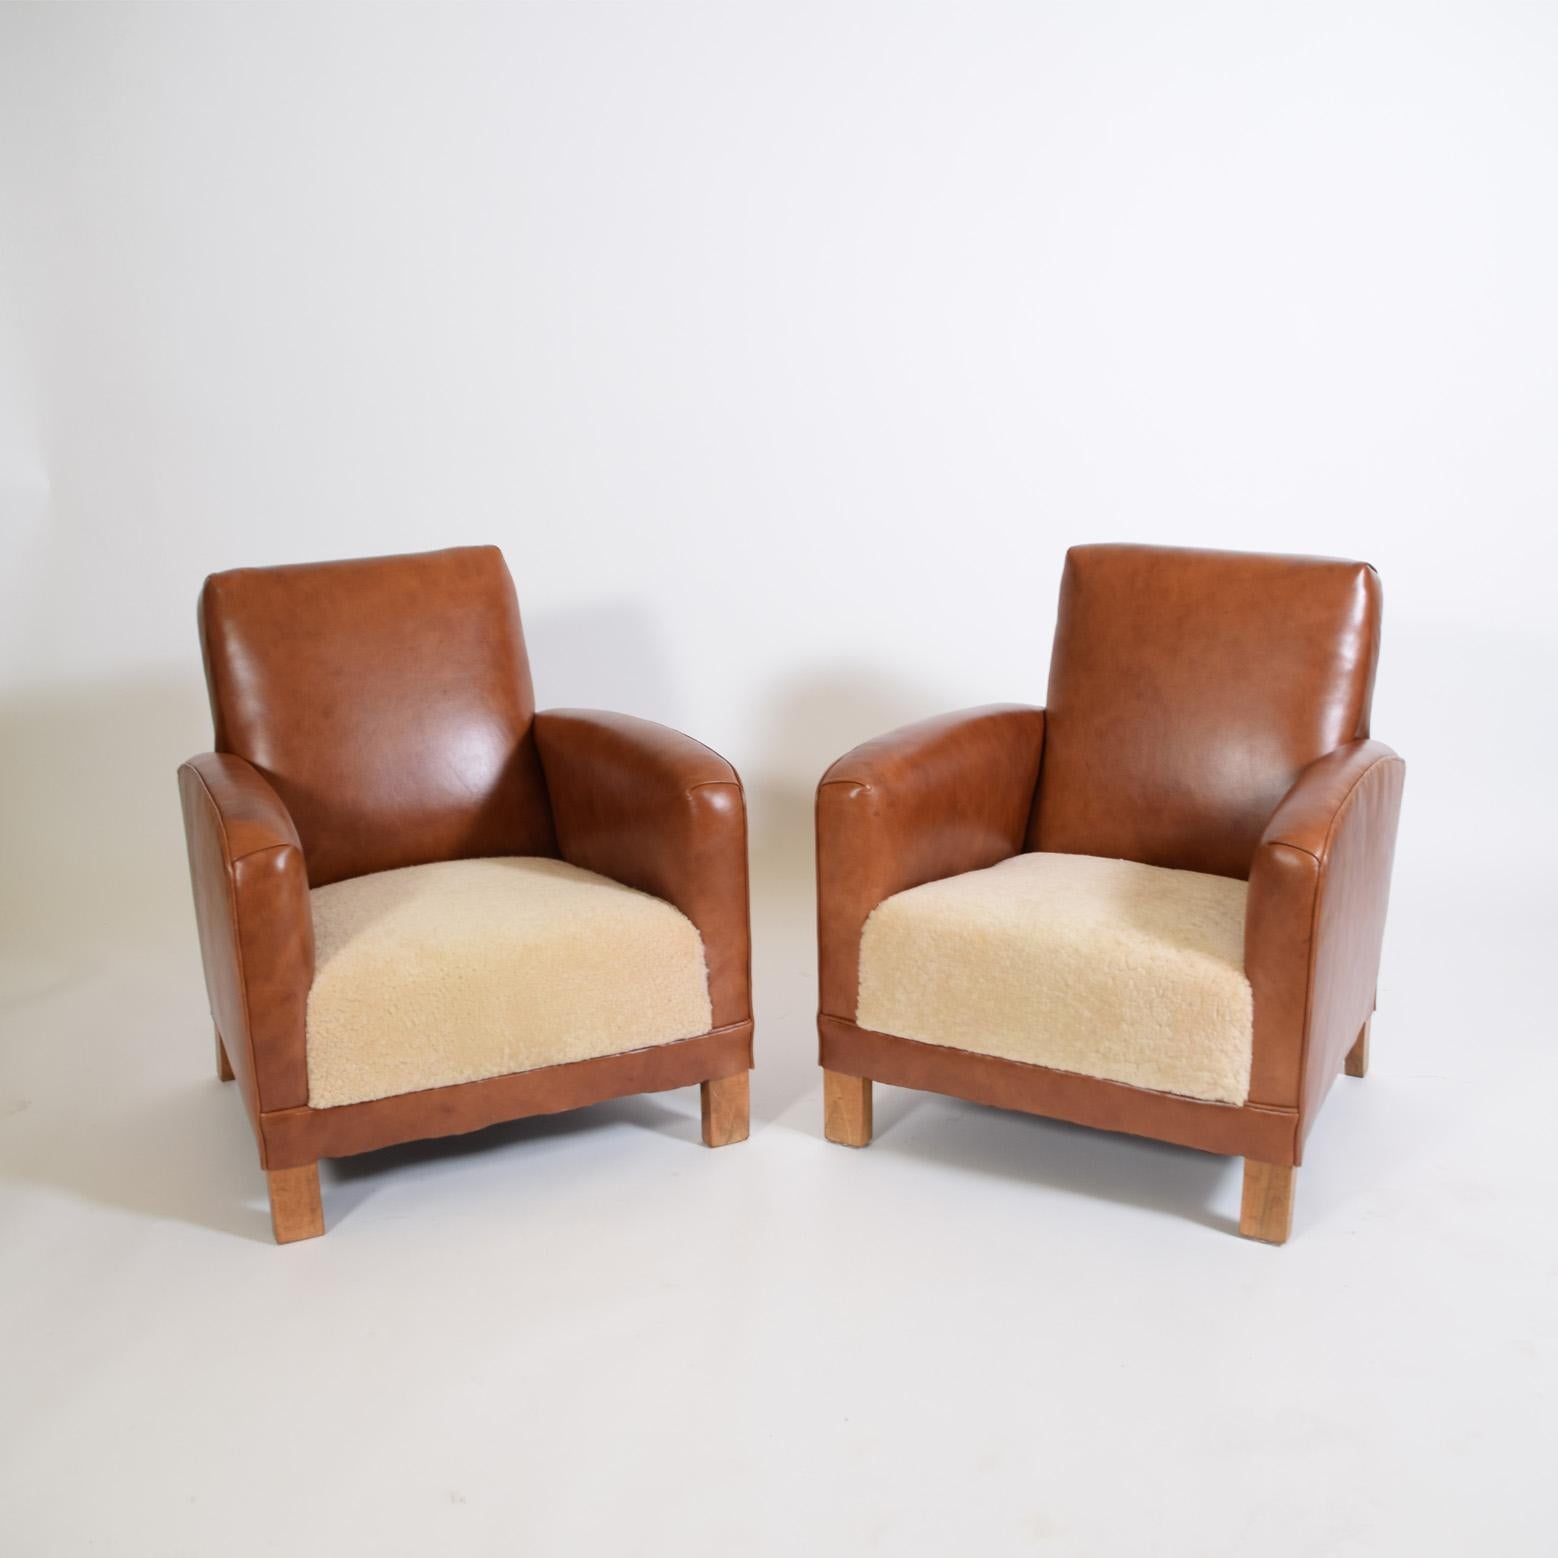 Neu gepolstert Leder / Schaffell 1930's Lounge Stühle aus Dänemark massivem Nussbaum Beine.